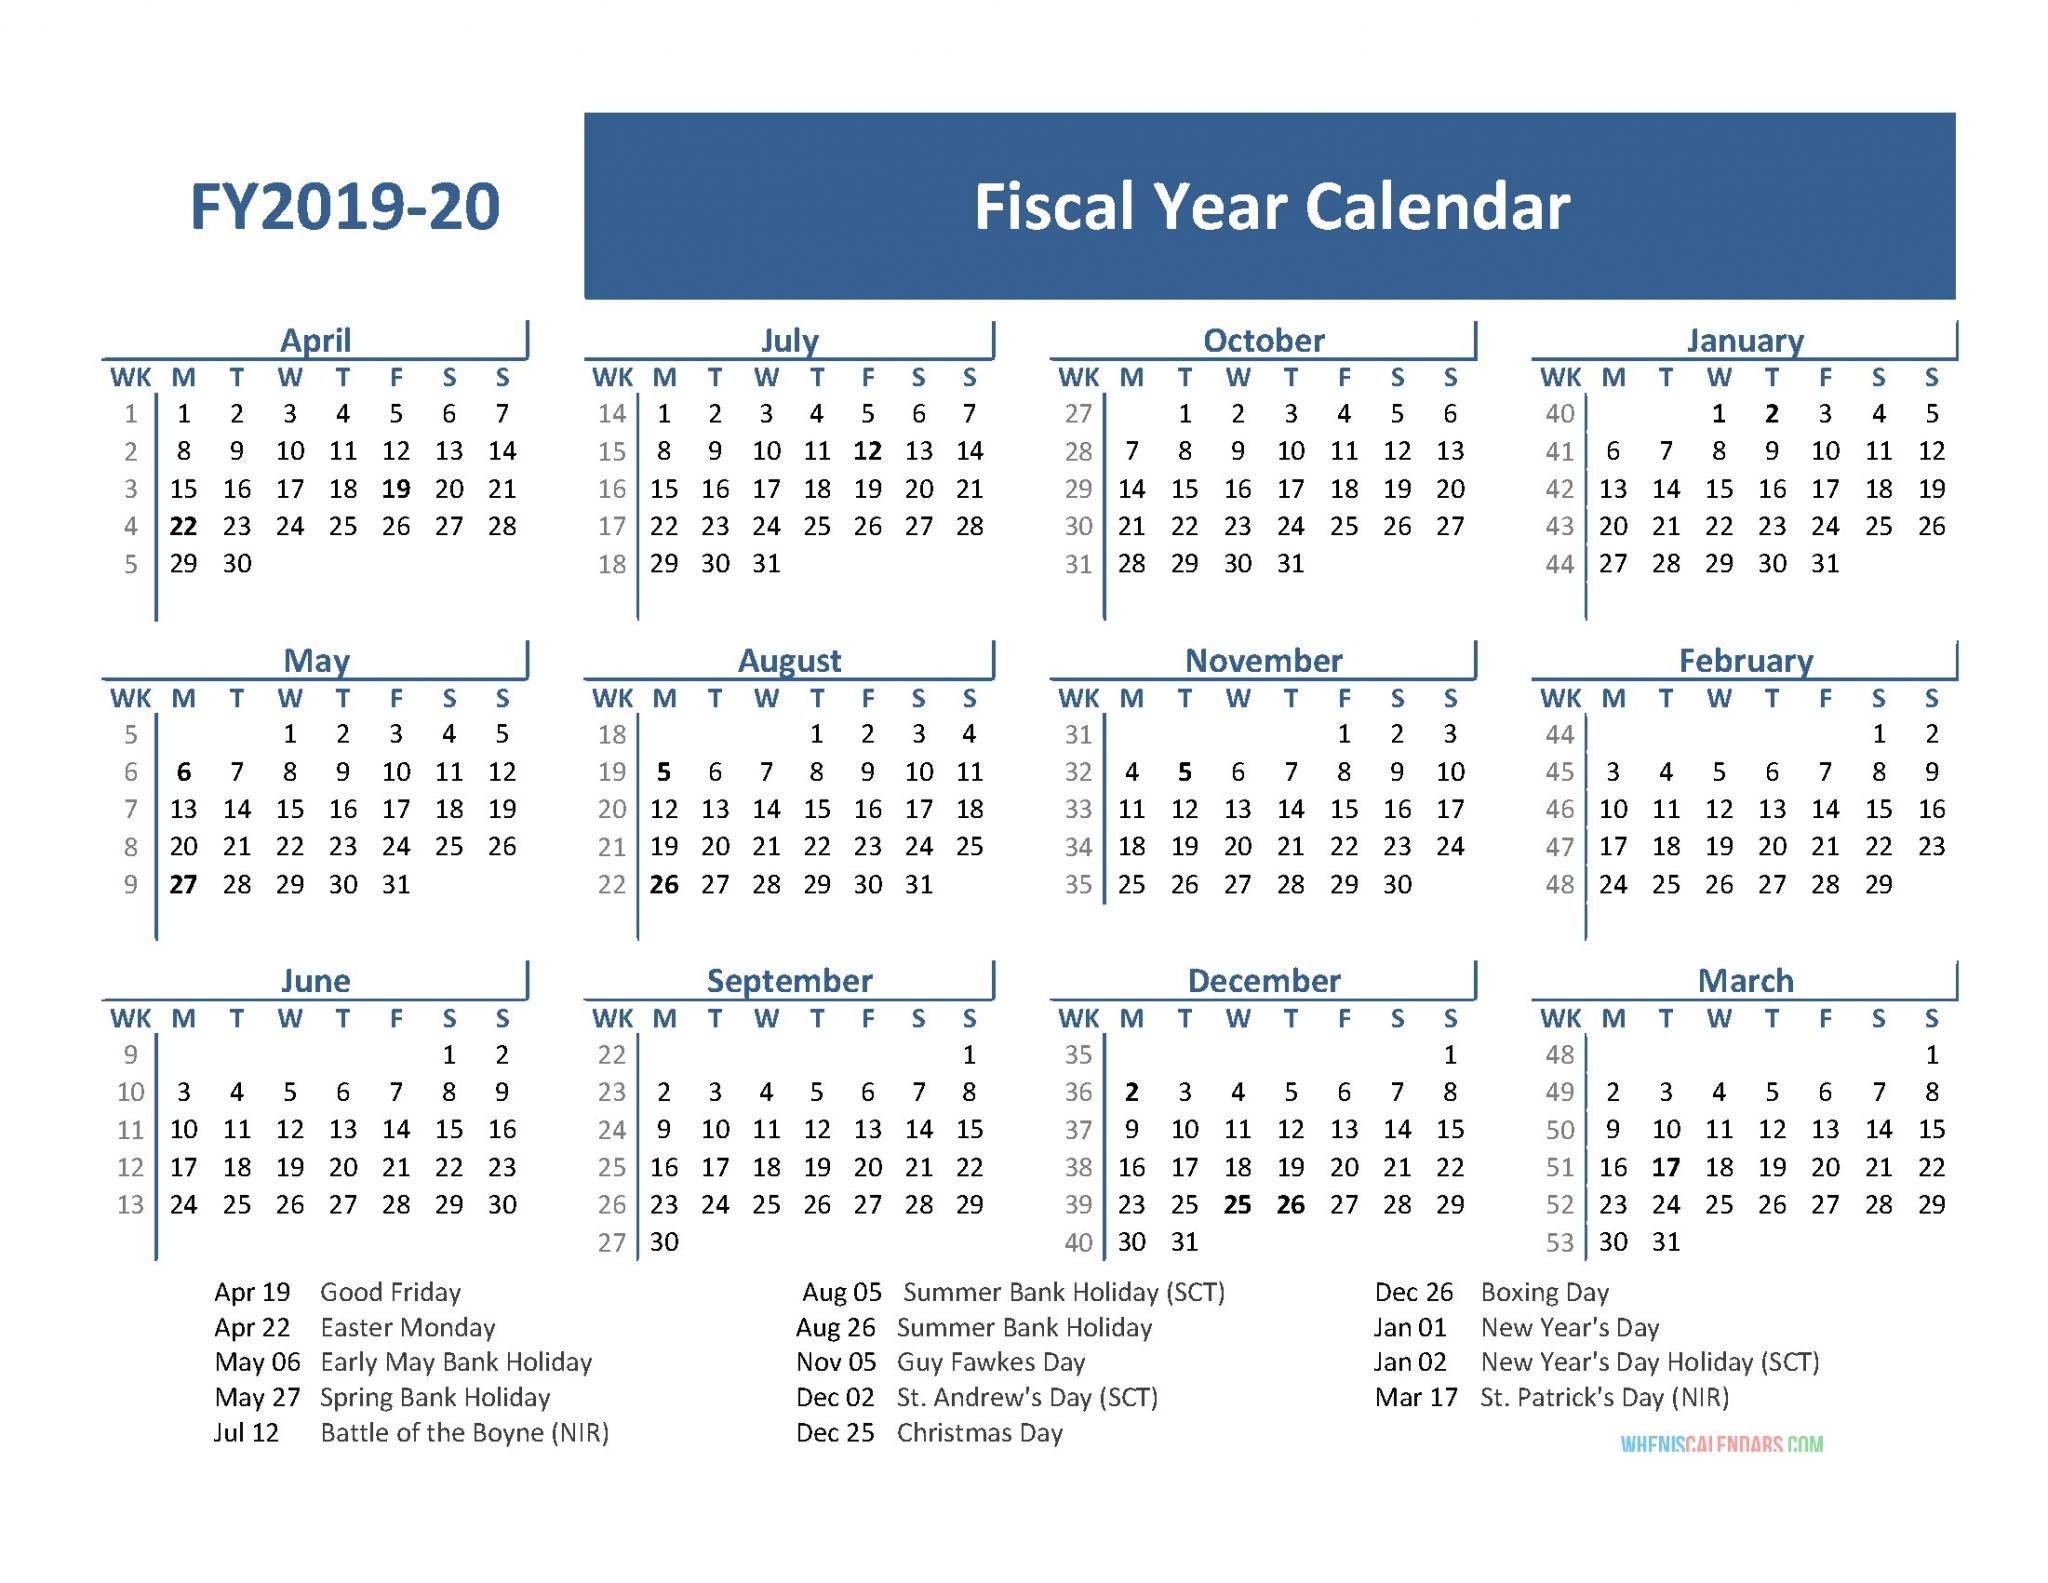 2019 2020 calendar financial week numbers